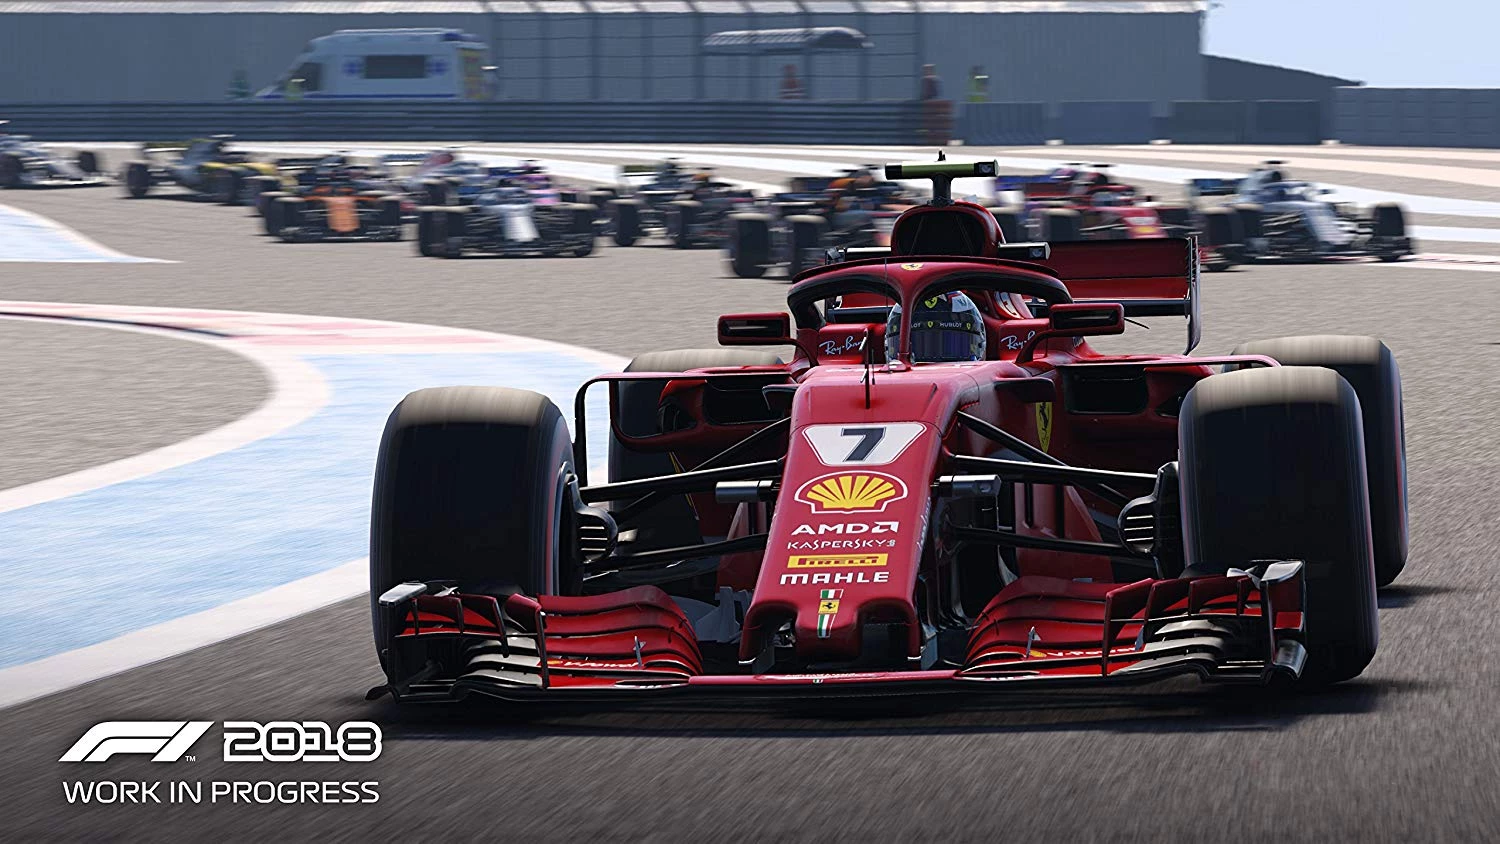 F1 2018 voor de PlayStation 4 kopen op nedgame.nl